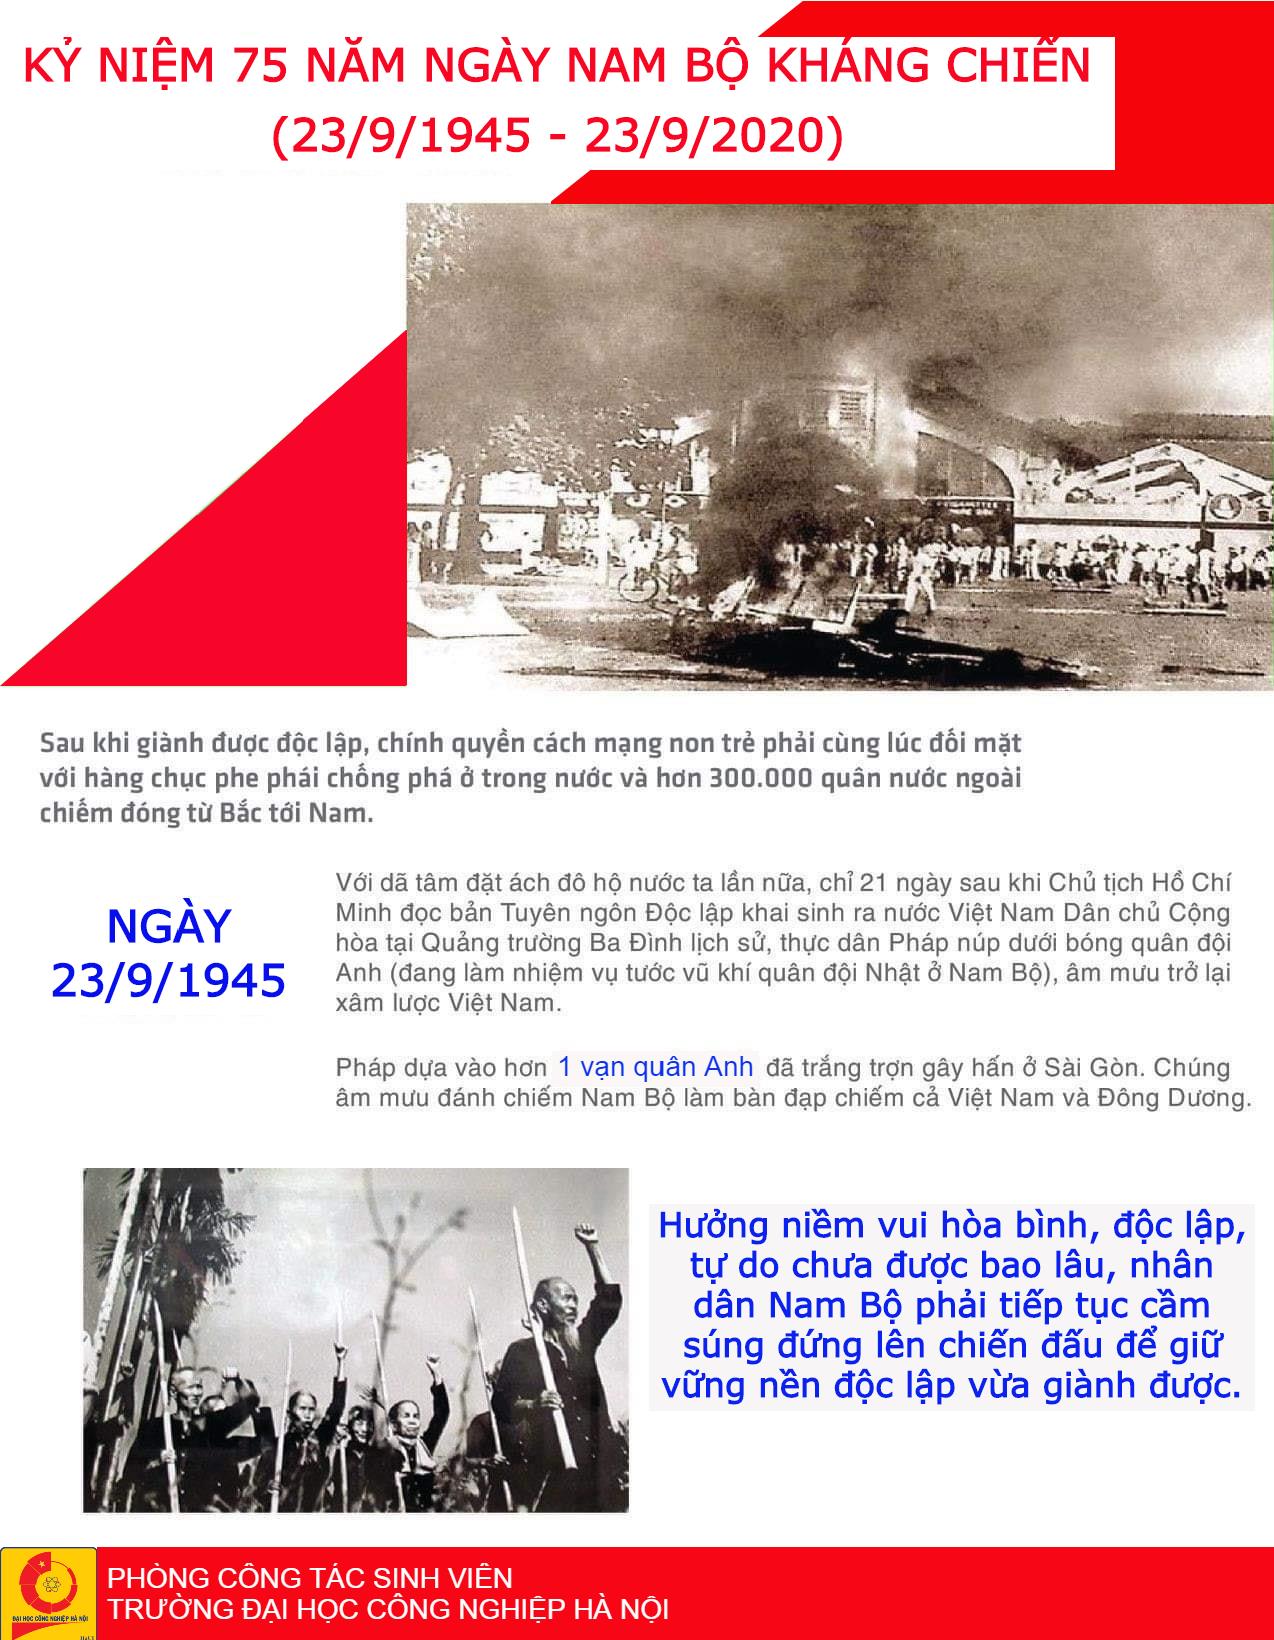 Kỷ niệm 75 năm Ngày Nam Bộ kháng chiến